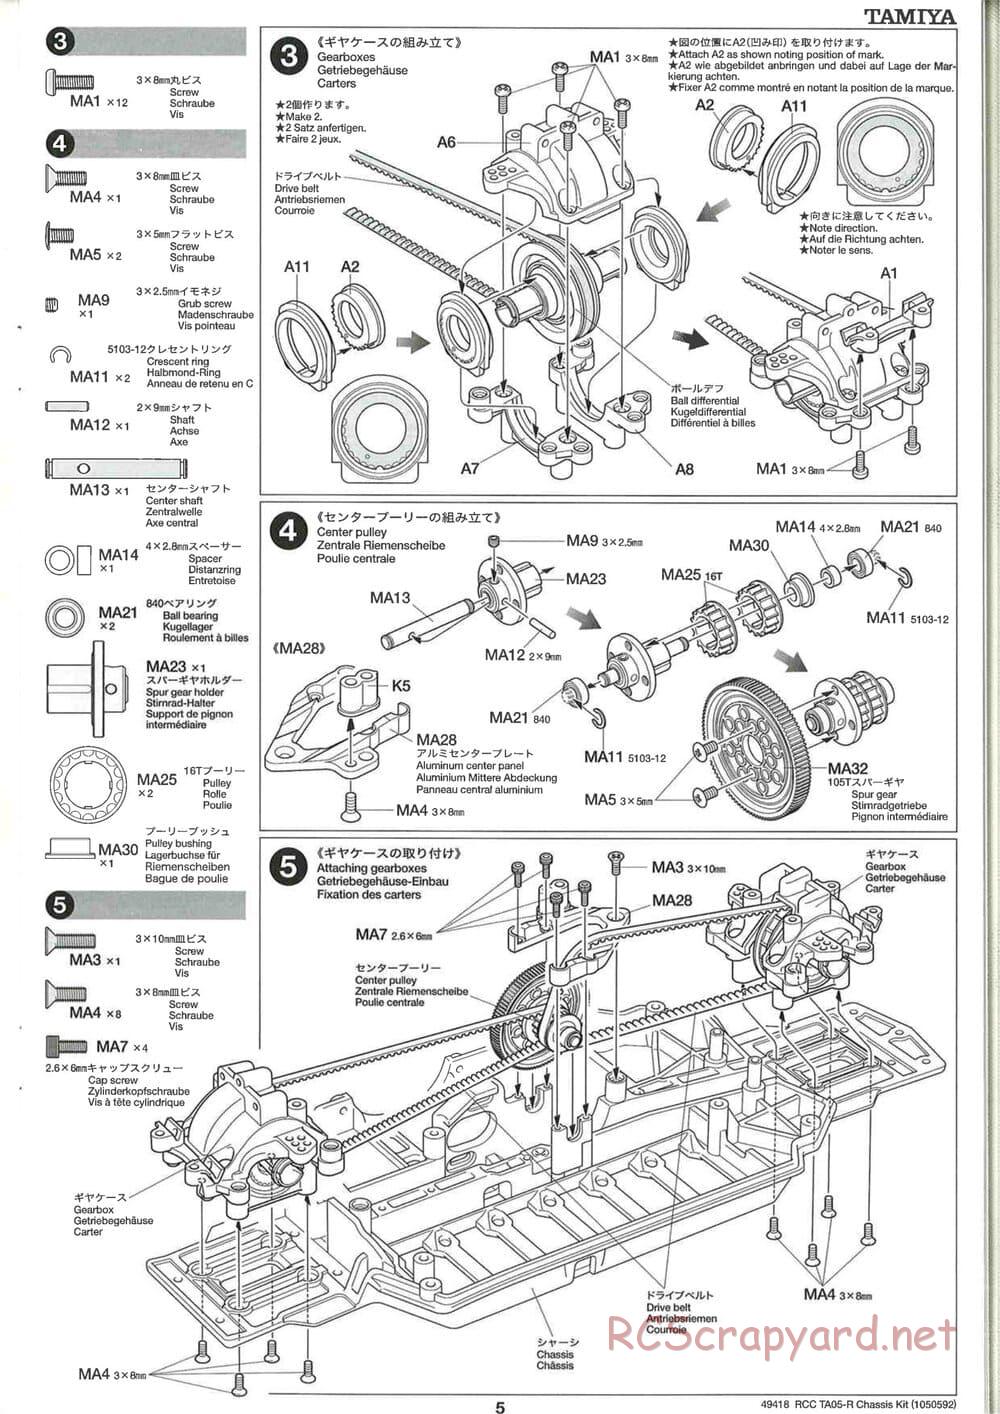 Tamiya - TA05-R Chassis - Manual - Page 5